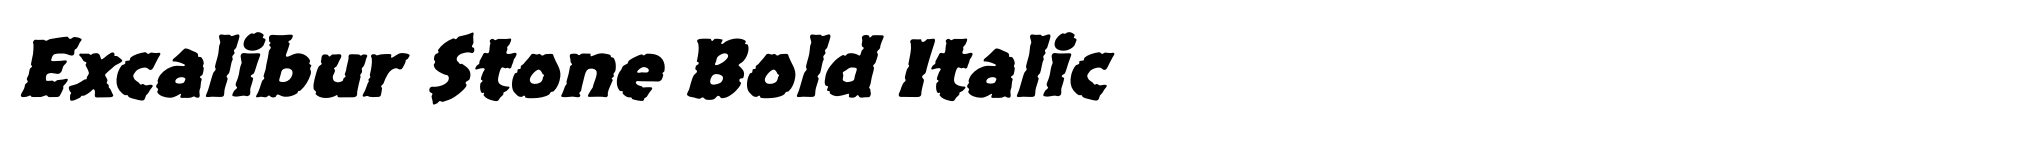 Excalibur Stone Bold Italic image